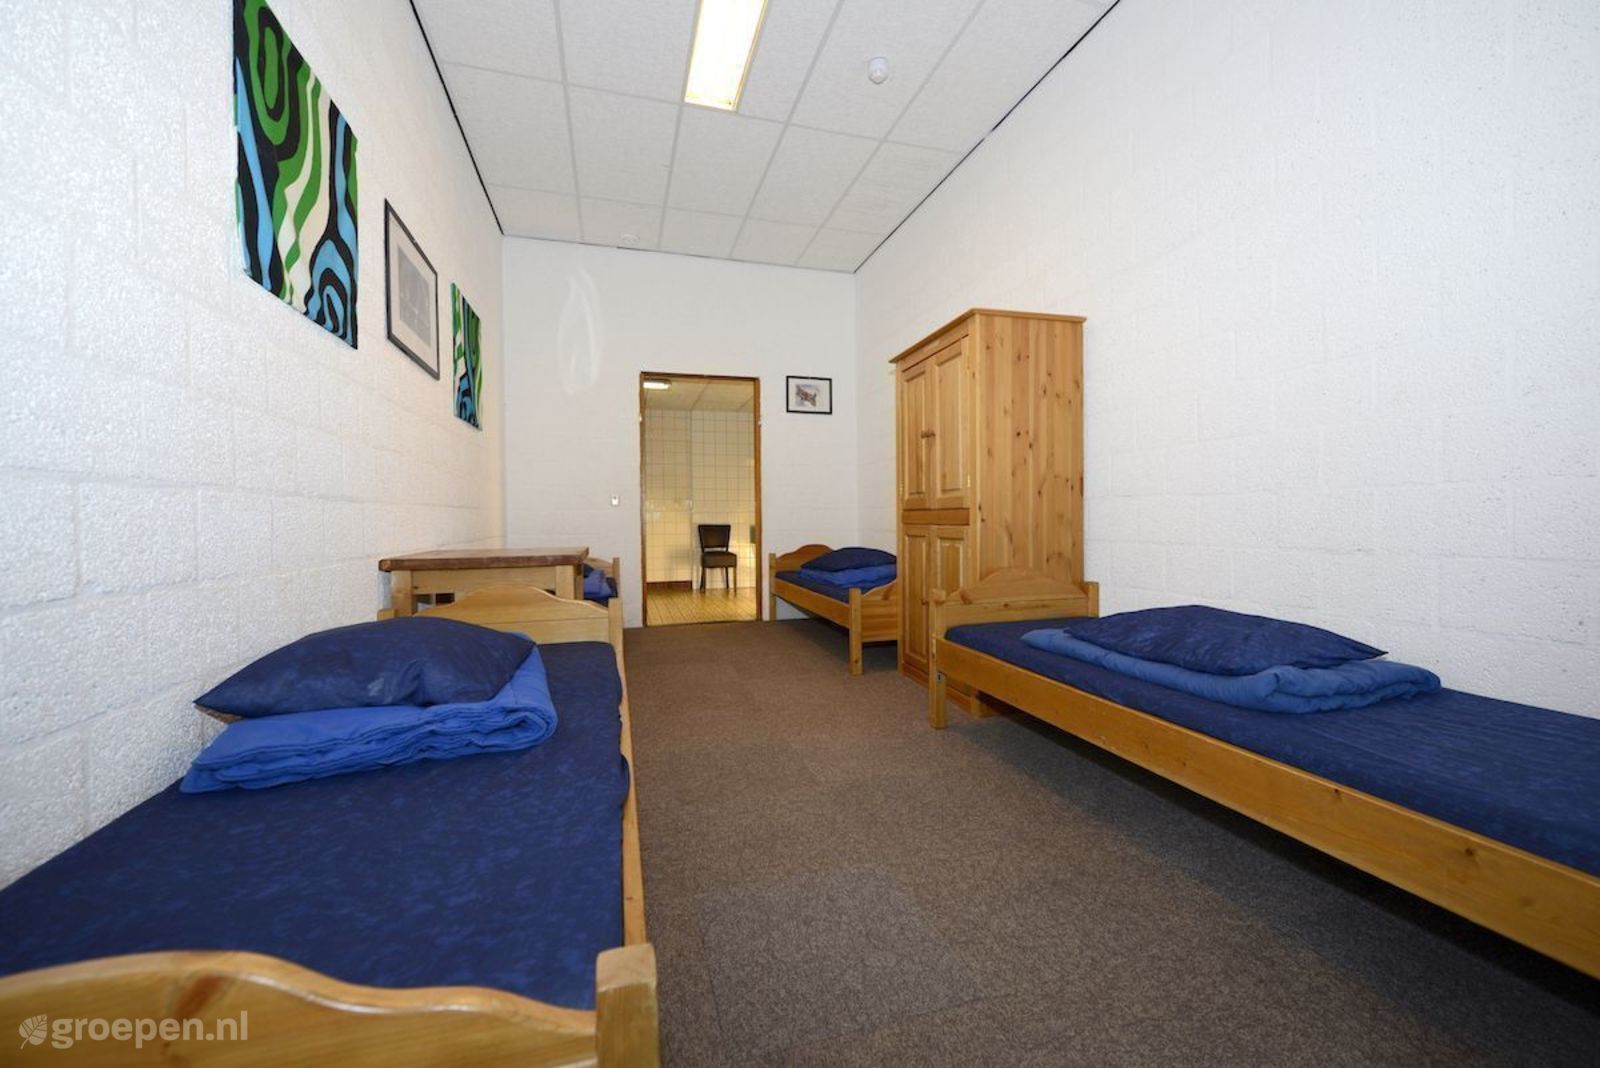 Group accommodation Roderesch